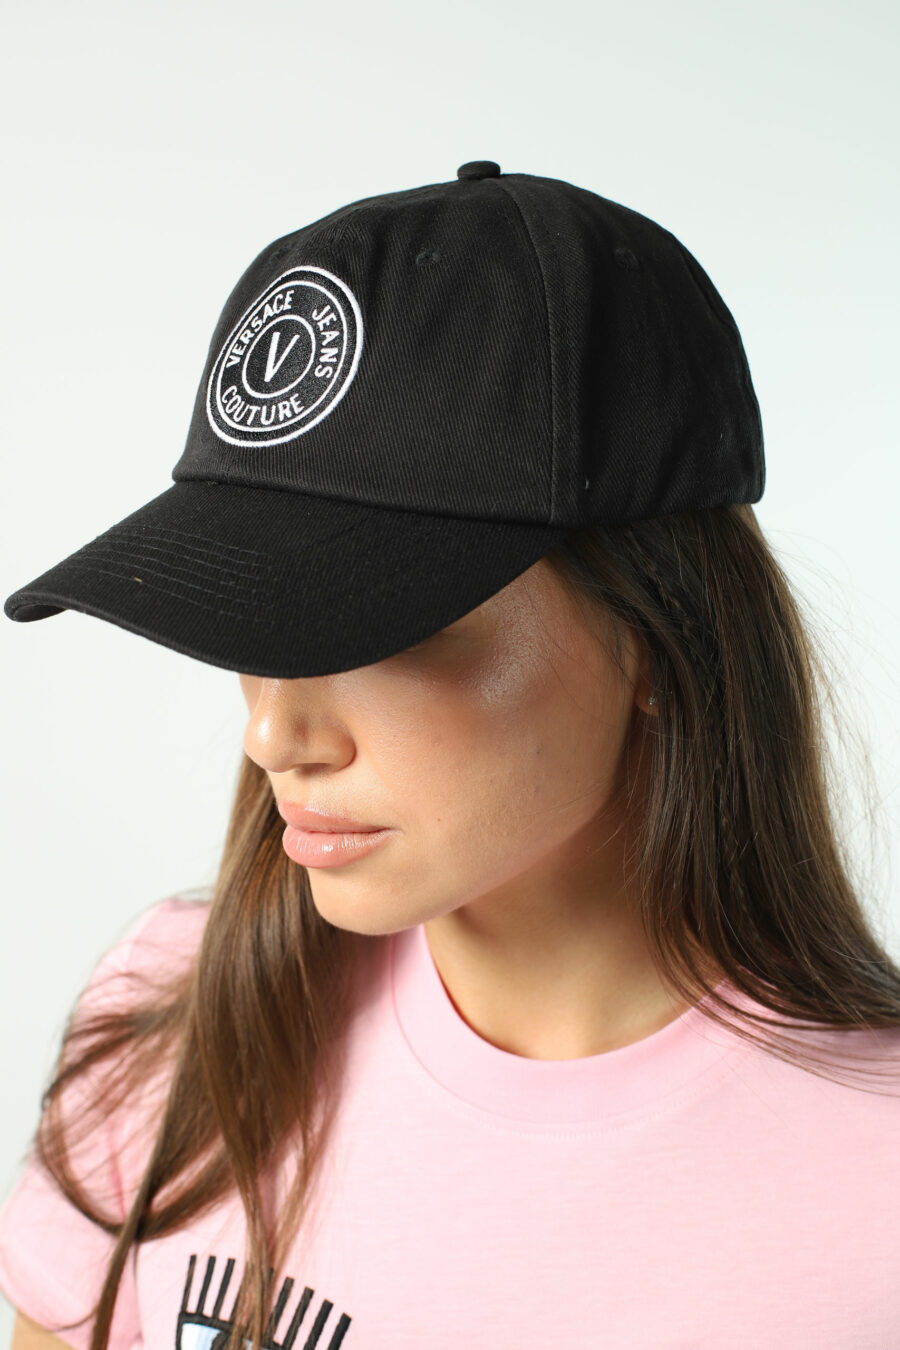 Gorra negra con logo circular blanco - Photos 2716